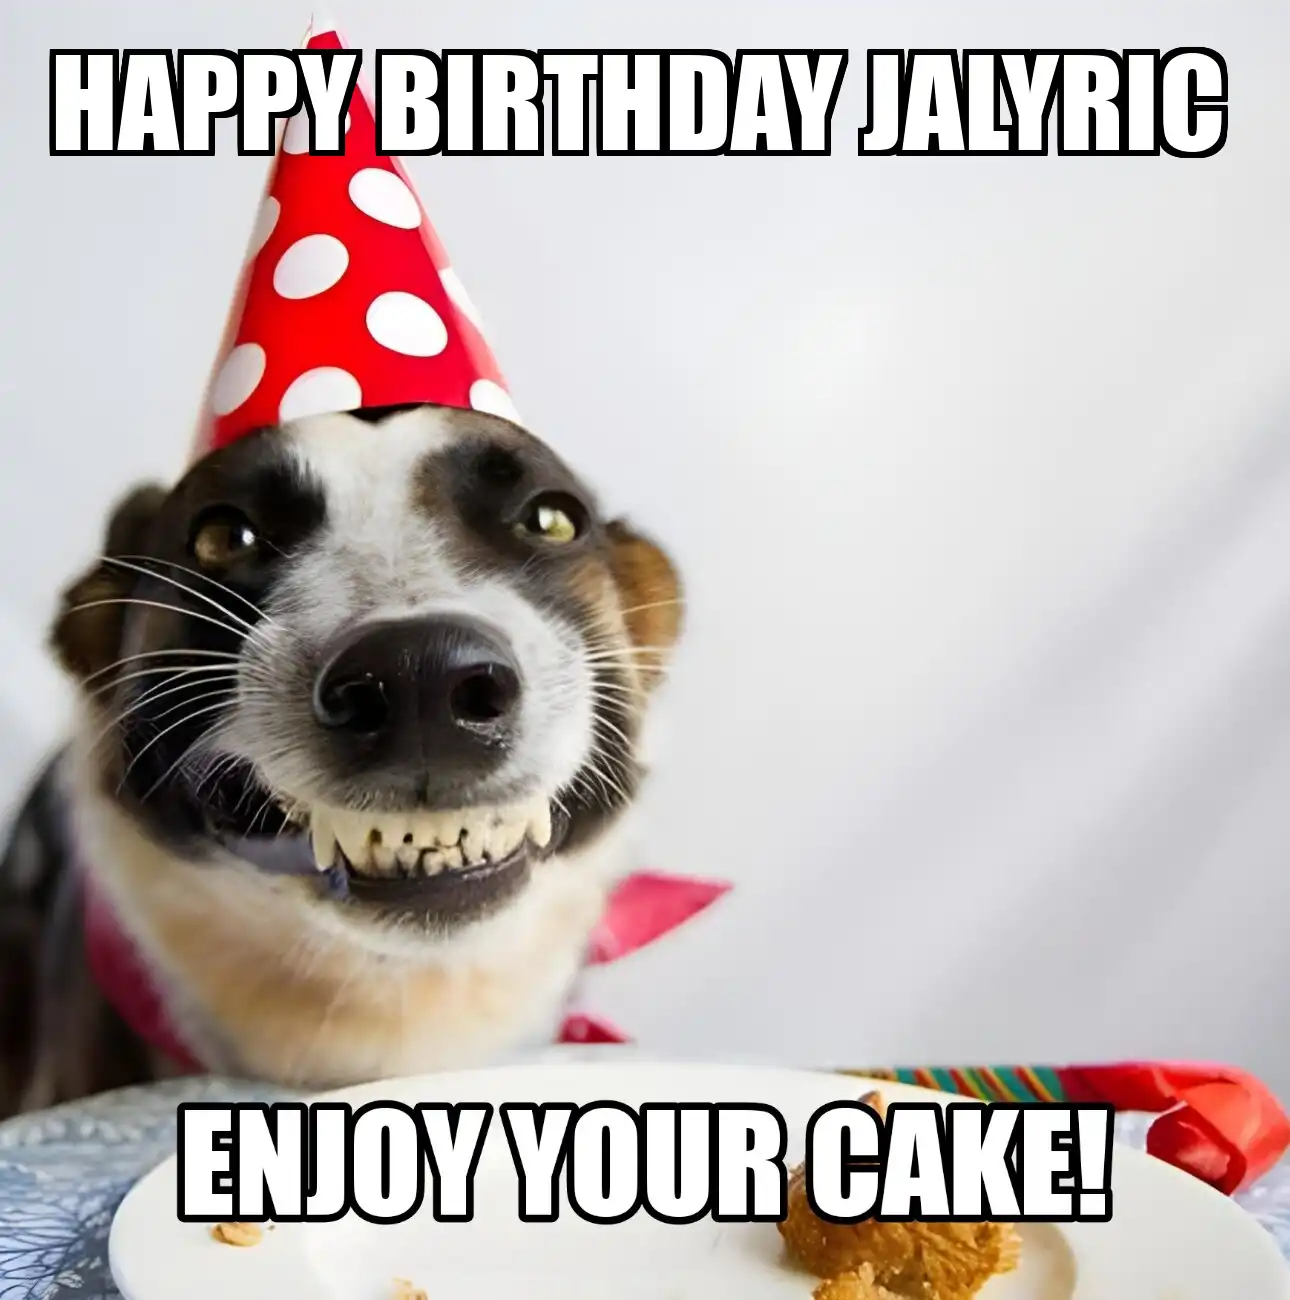 Happy Birthday Jalyric Enjoy Your Cake Dog Meme